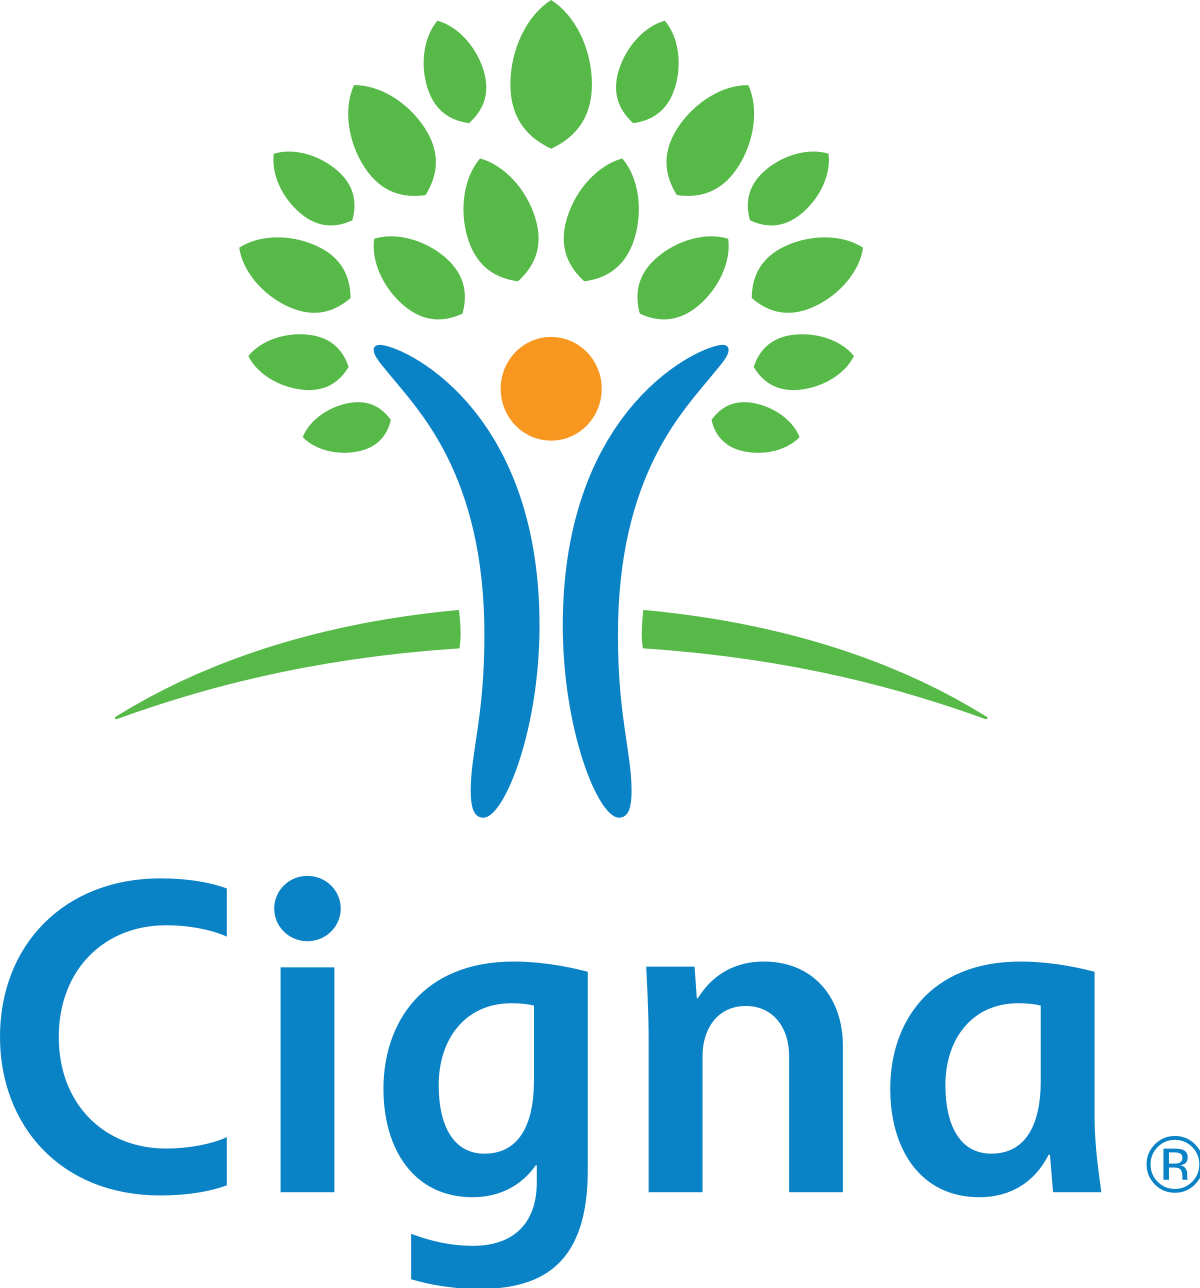 cigna logo transparent